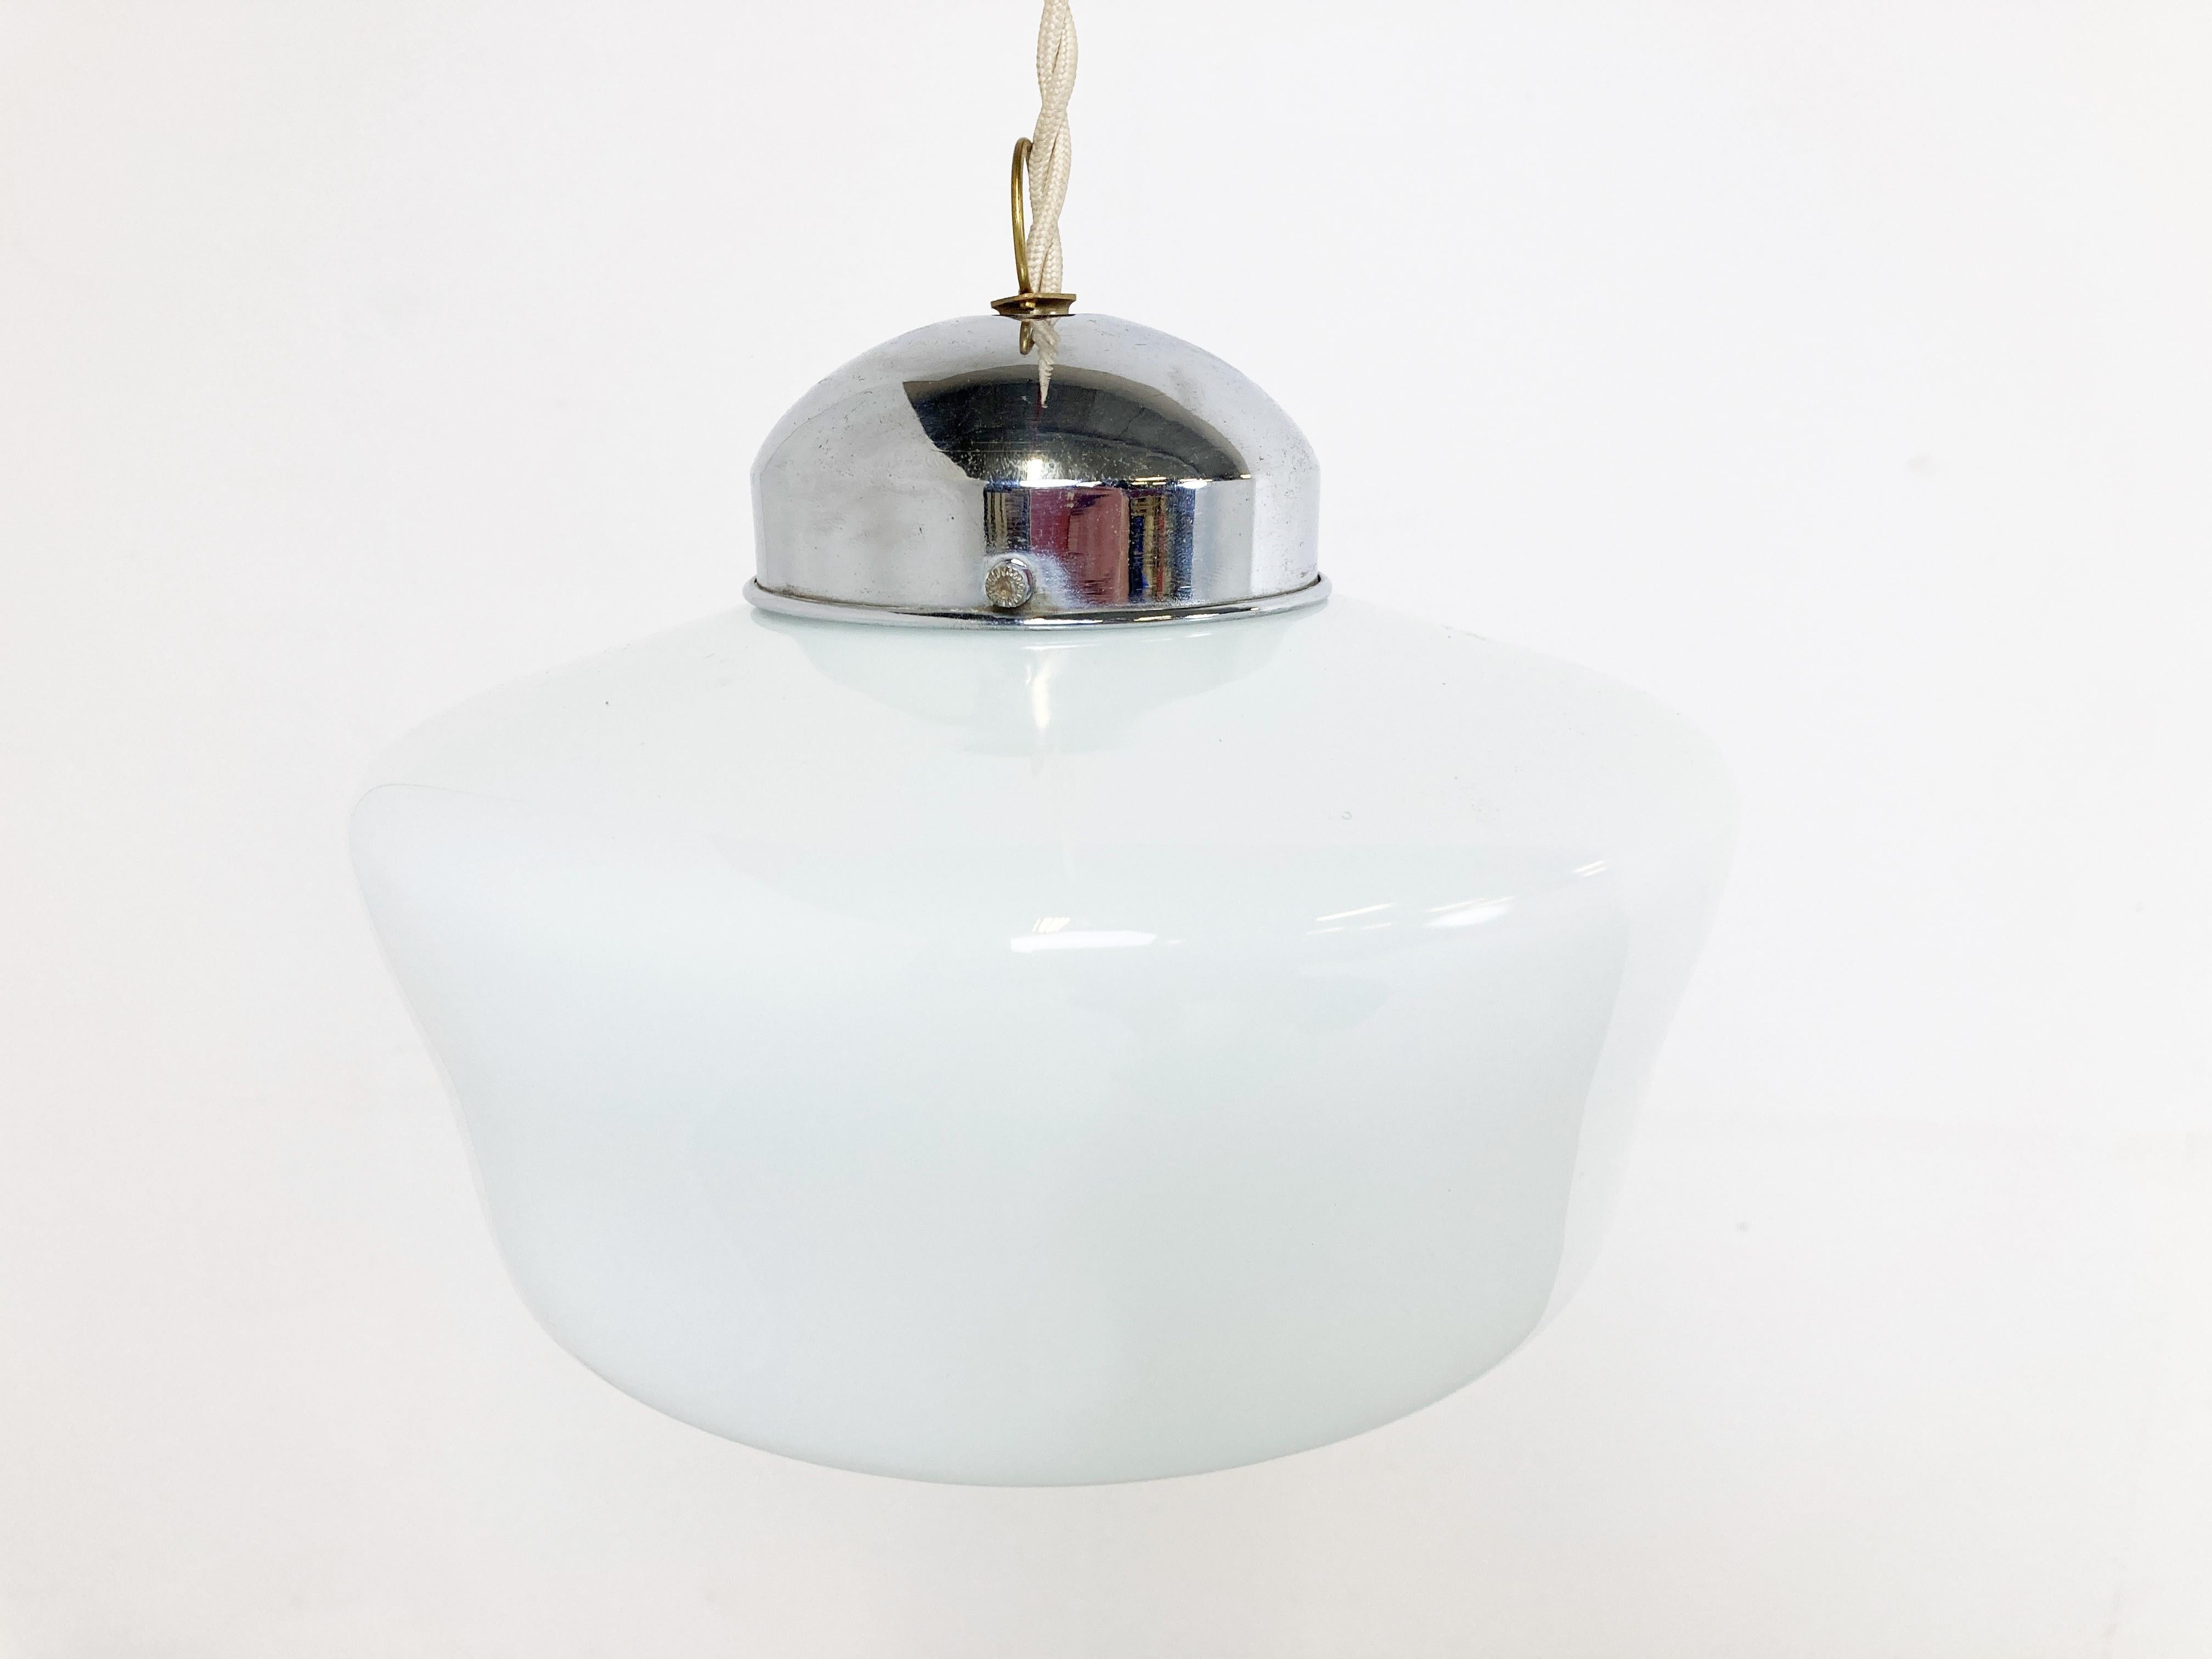 Antike Art-Deco-Hängeleuchte für den Flur.

Diese Lampe ist sehr typisch für die Art-Deco-Ära und wurde häufig in Fluren, Büros oder größeren öffentlichen Räumen aufgehängt.

Die Lampe hat die originale vernickelte Schirmhalterung. Die Länge kann so